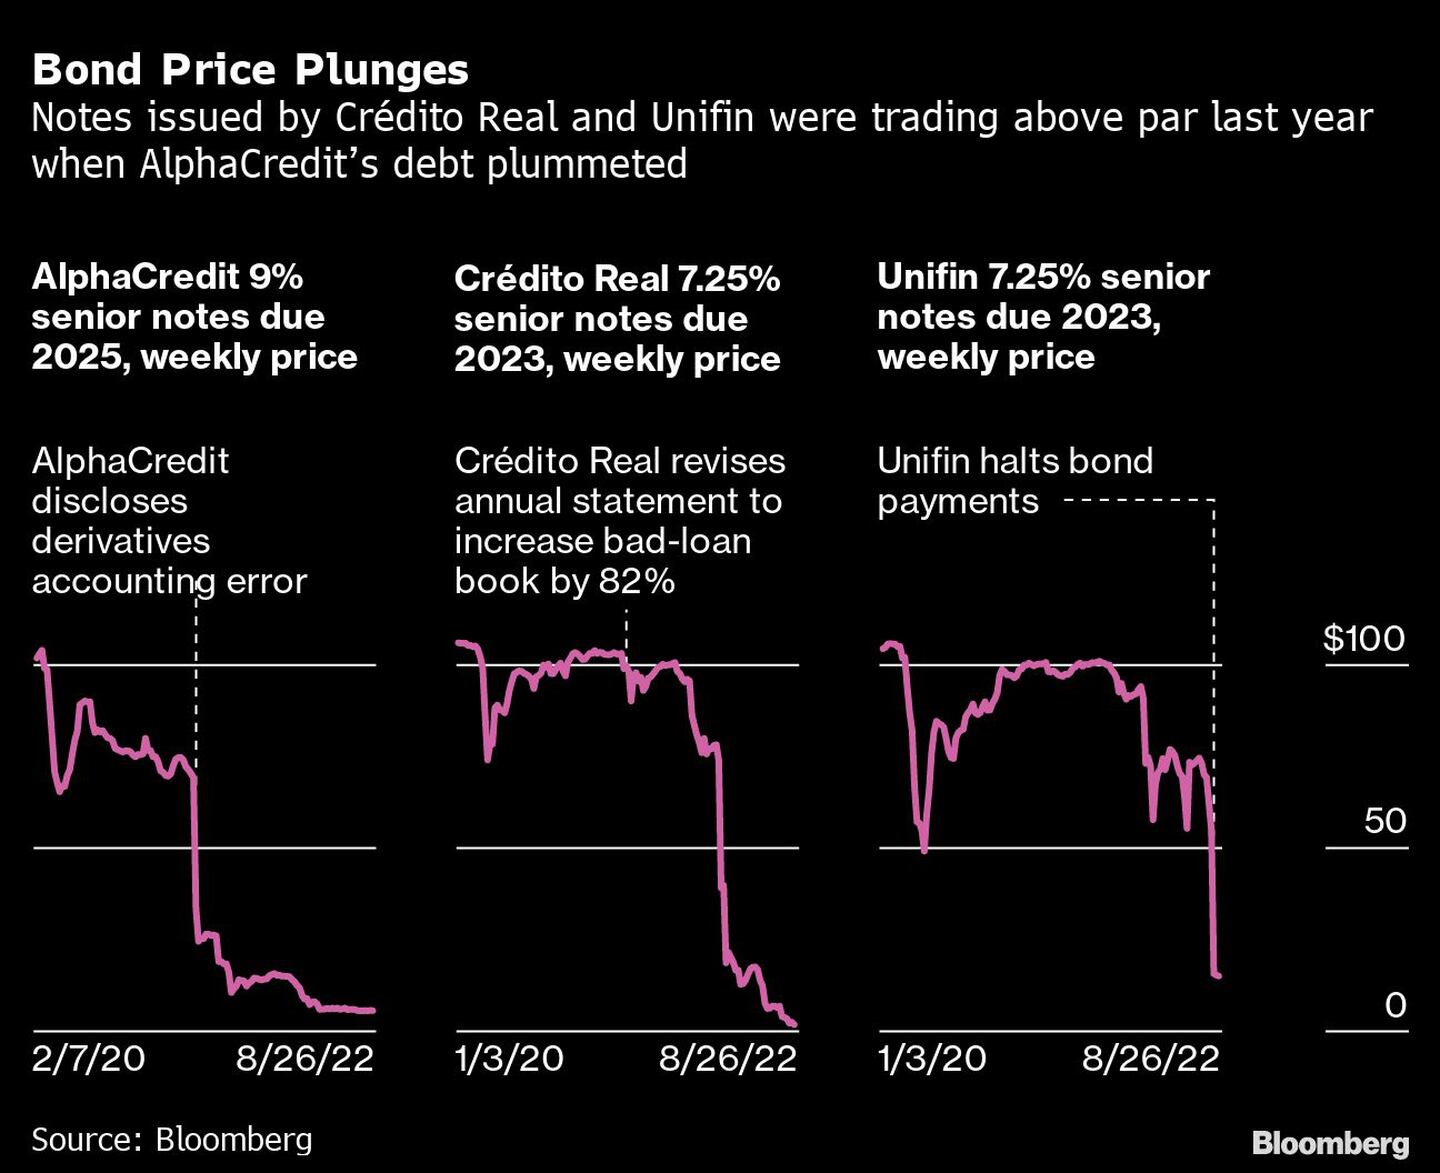 El precio de los bonos se desploma | Las notas emitidas por Crédito Real y Unifin cotizaban por encima de par el año pasado cuando la deuda de AlphaCredits se desplomódfd